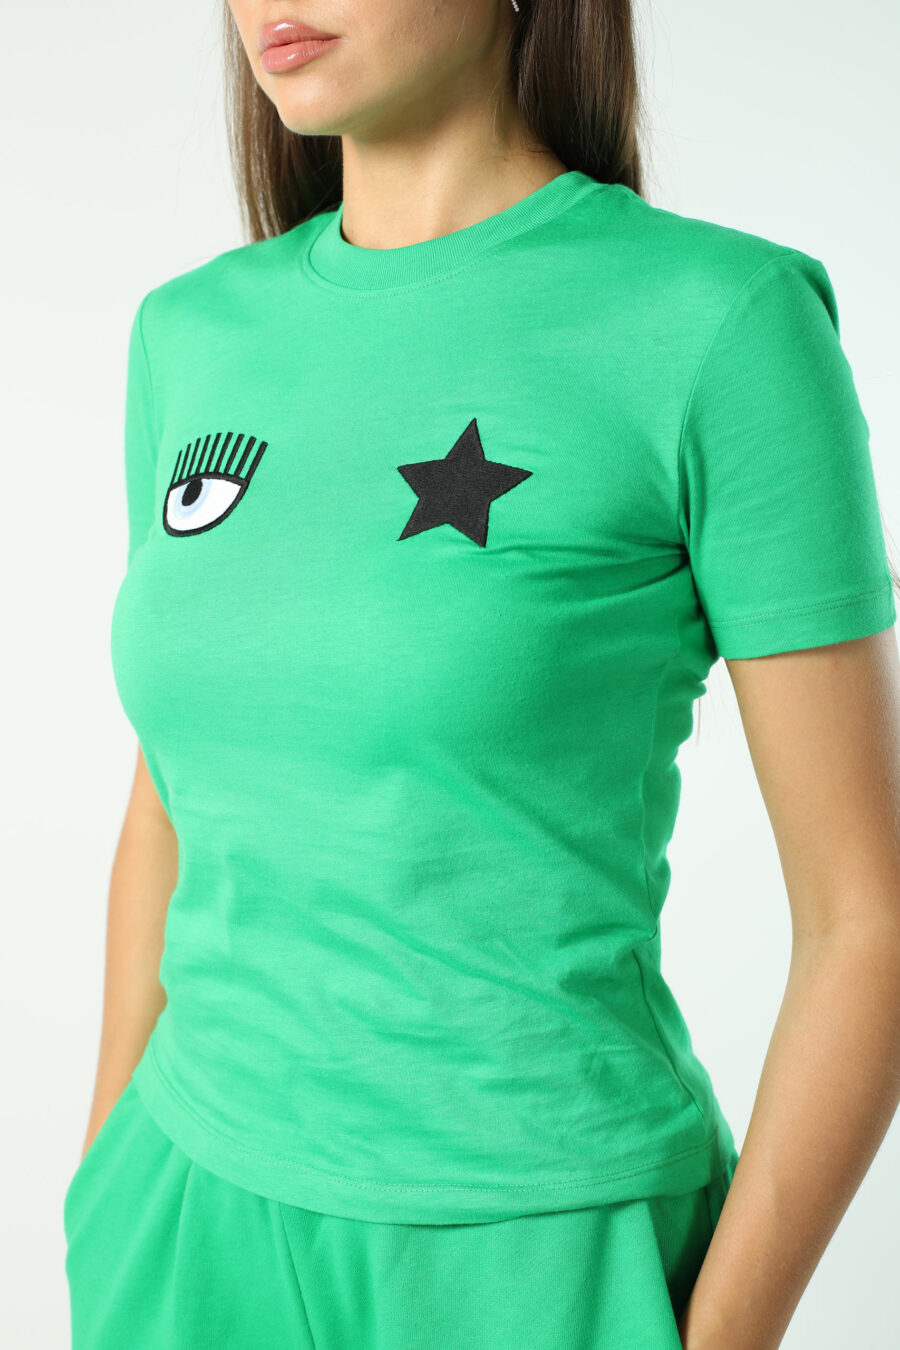 T-shirt verde claro com o logótipo do olho e da estrela - Fotos 2584